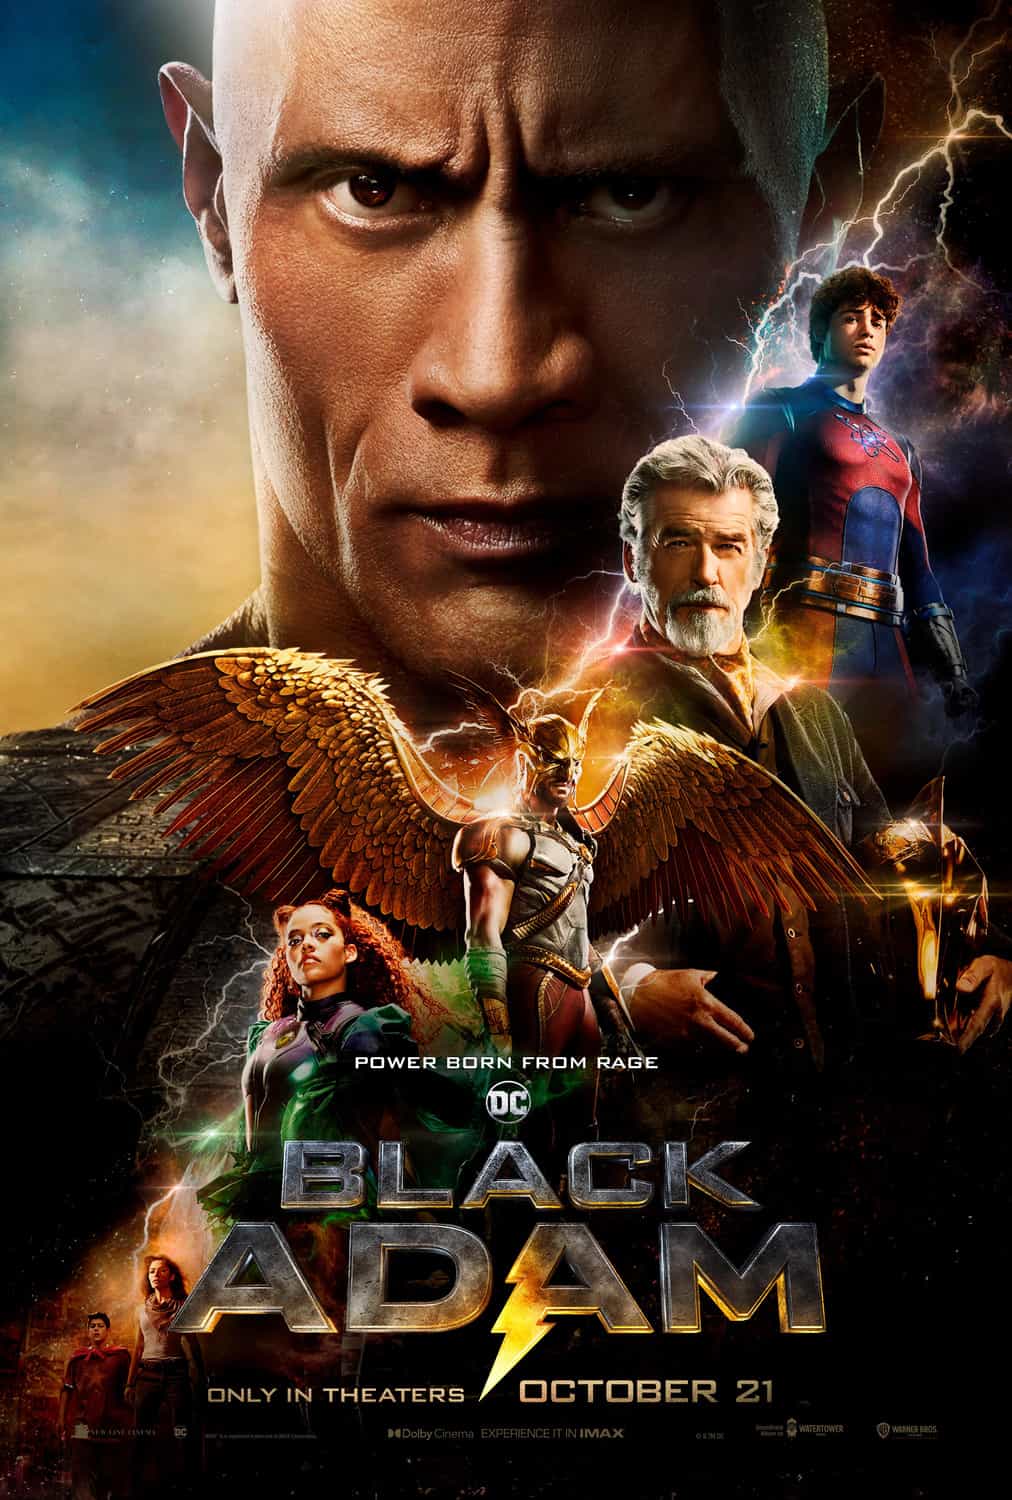 Black Adam (2022) Cast and Crew